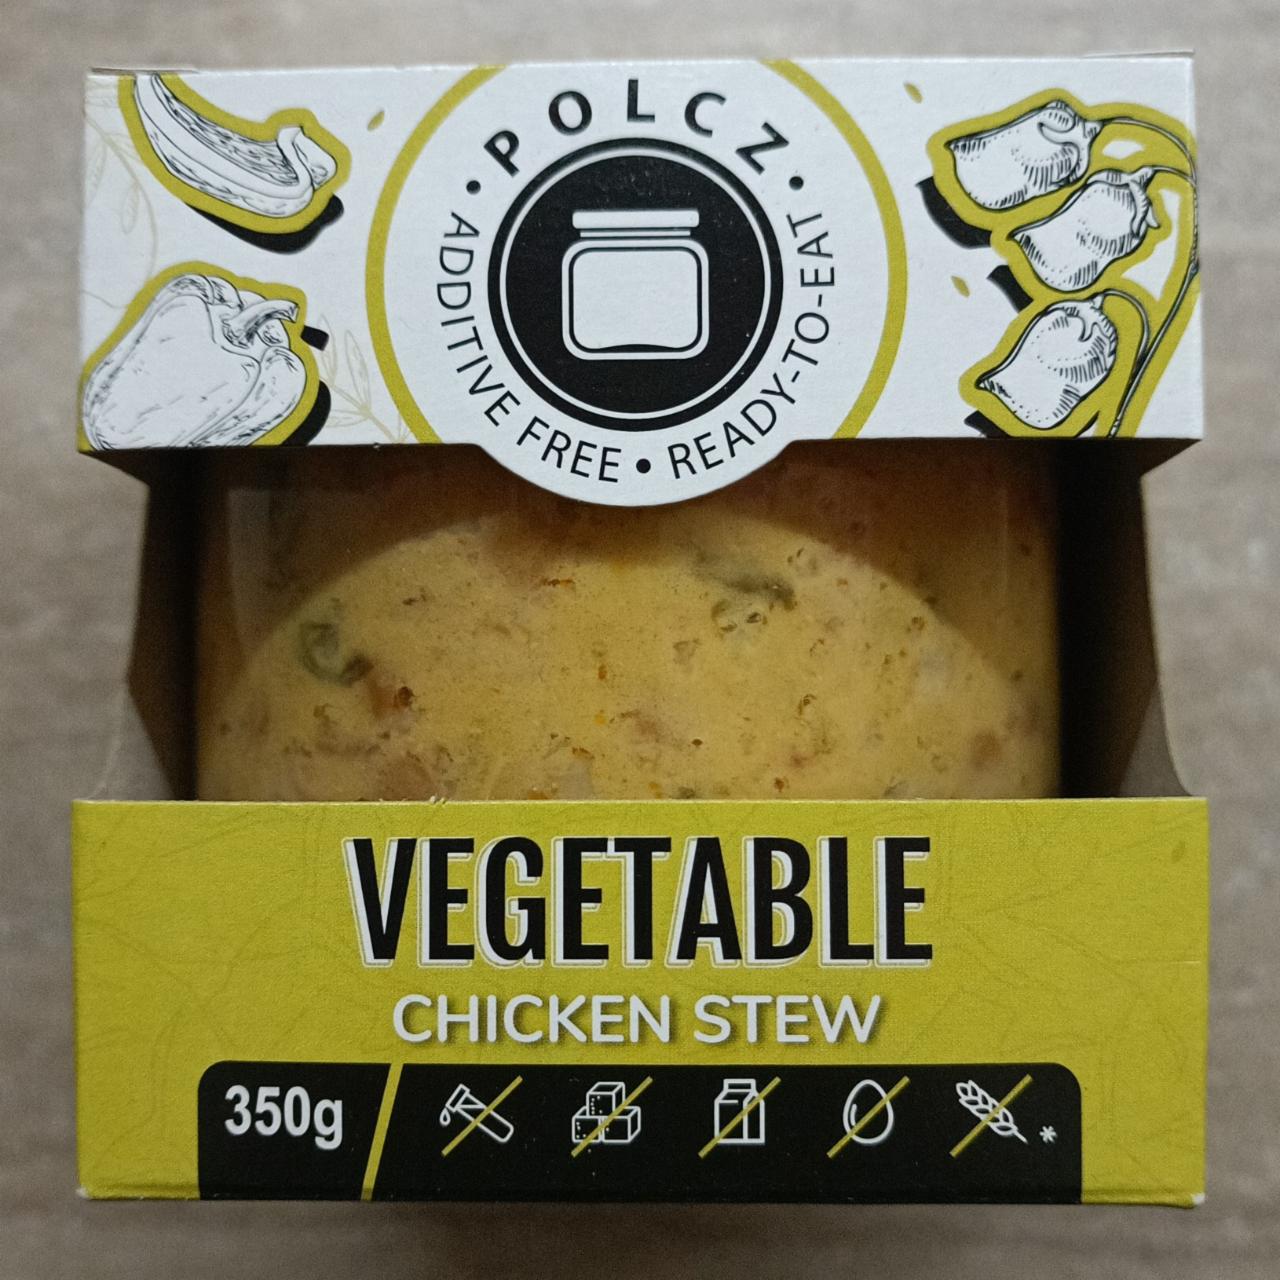 Képek - Vegetable Chicken Stew Polcz